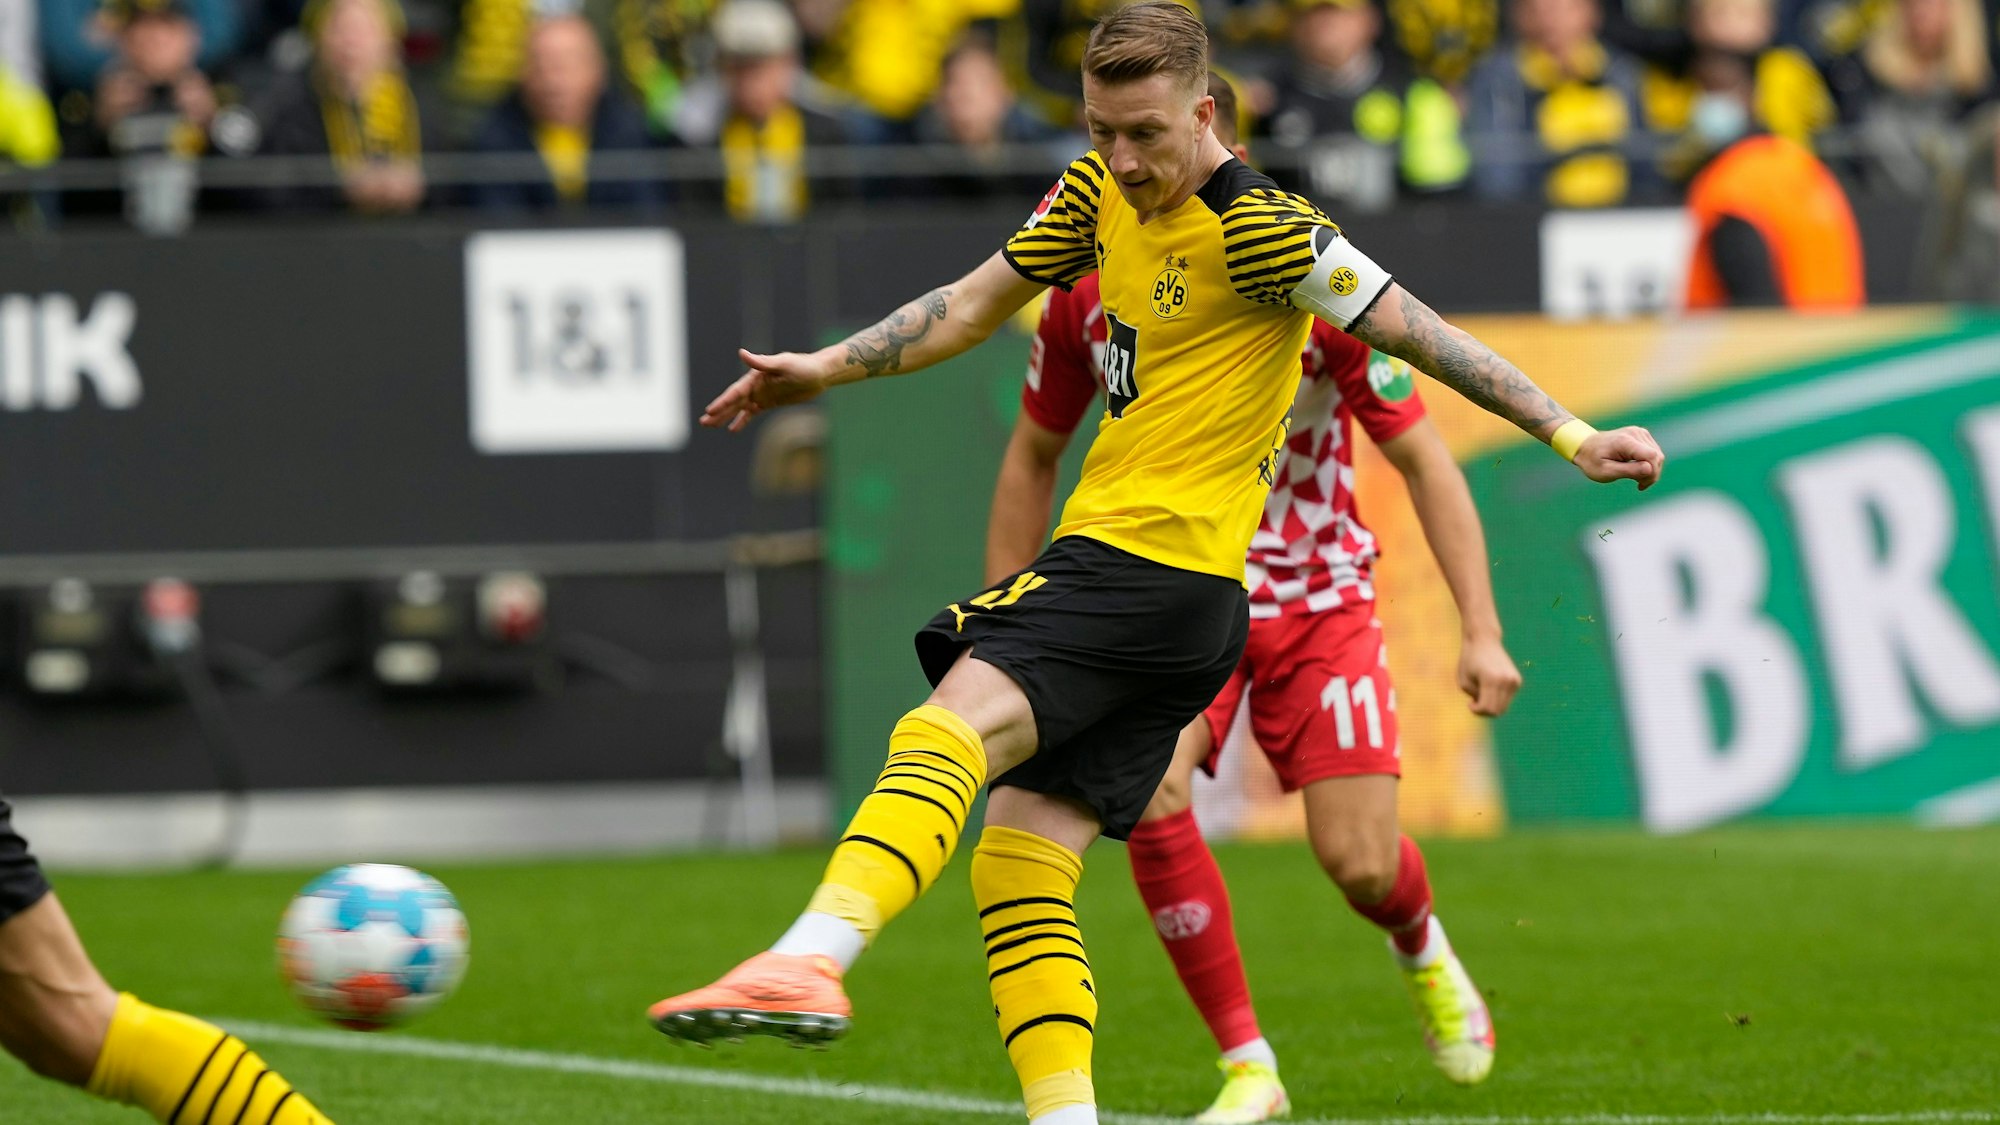 Marco Reus trifft mit einem Linksschuss für Borussia Dortmund gegen Mainz 05.